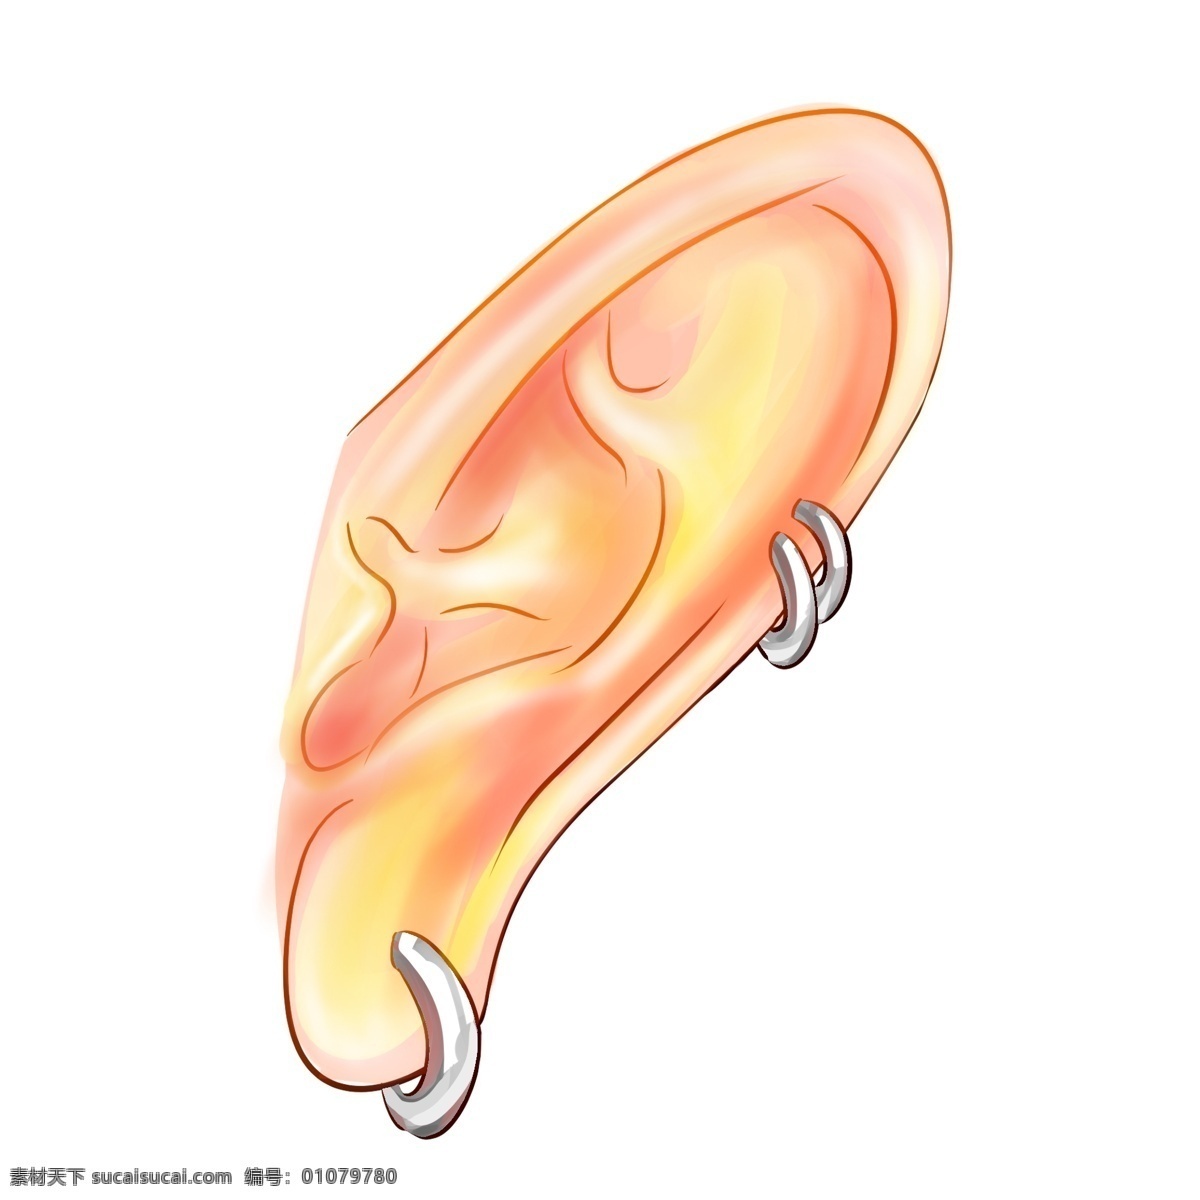 耳朵 器官 卡通 插画 耳朵的器官 卡通插画 人体器官 五官 器官插画 人体组织 漂亮的耳朵